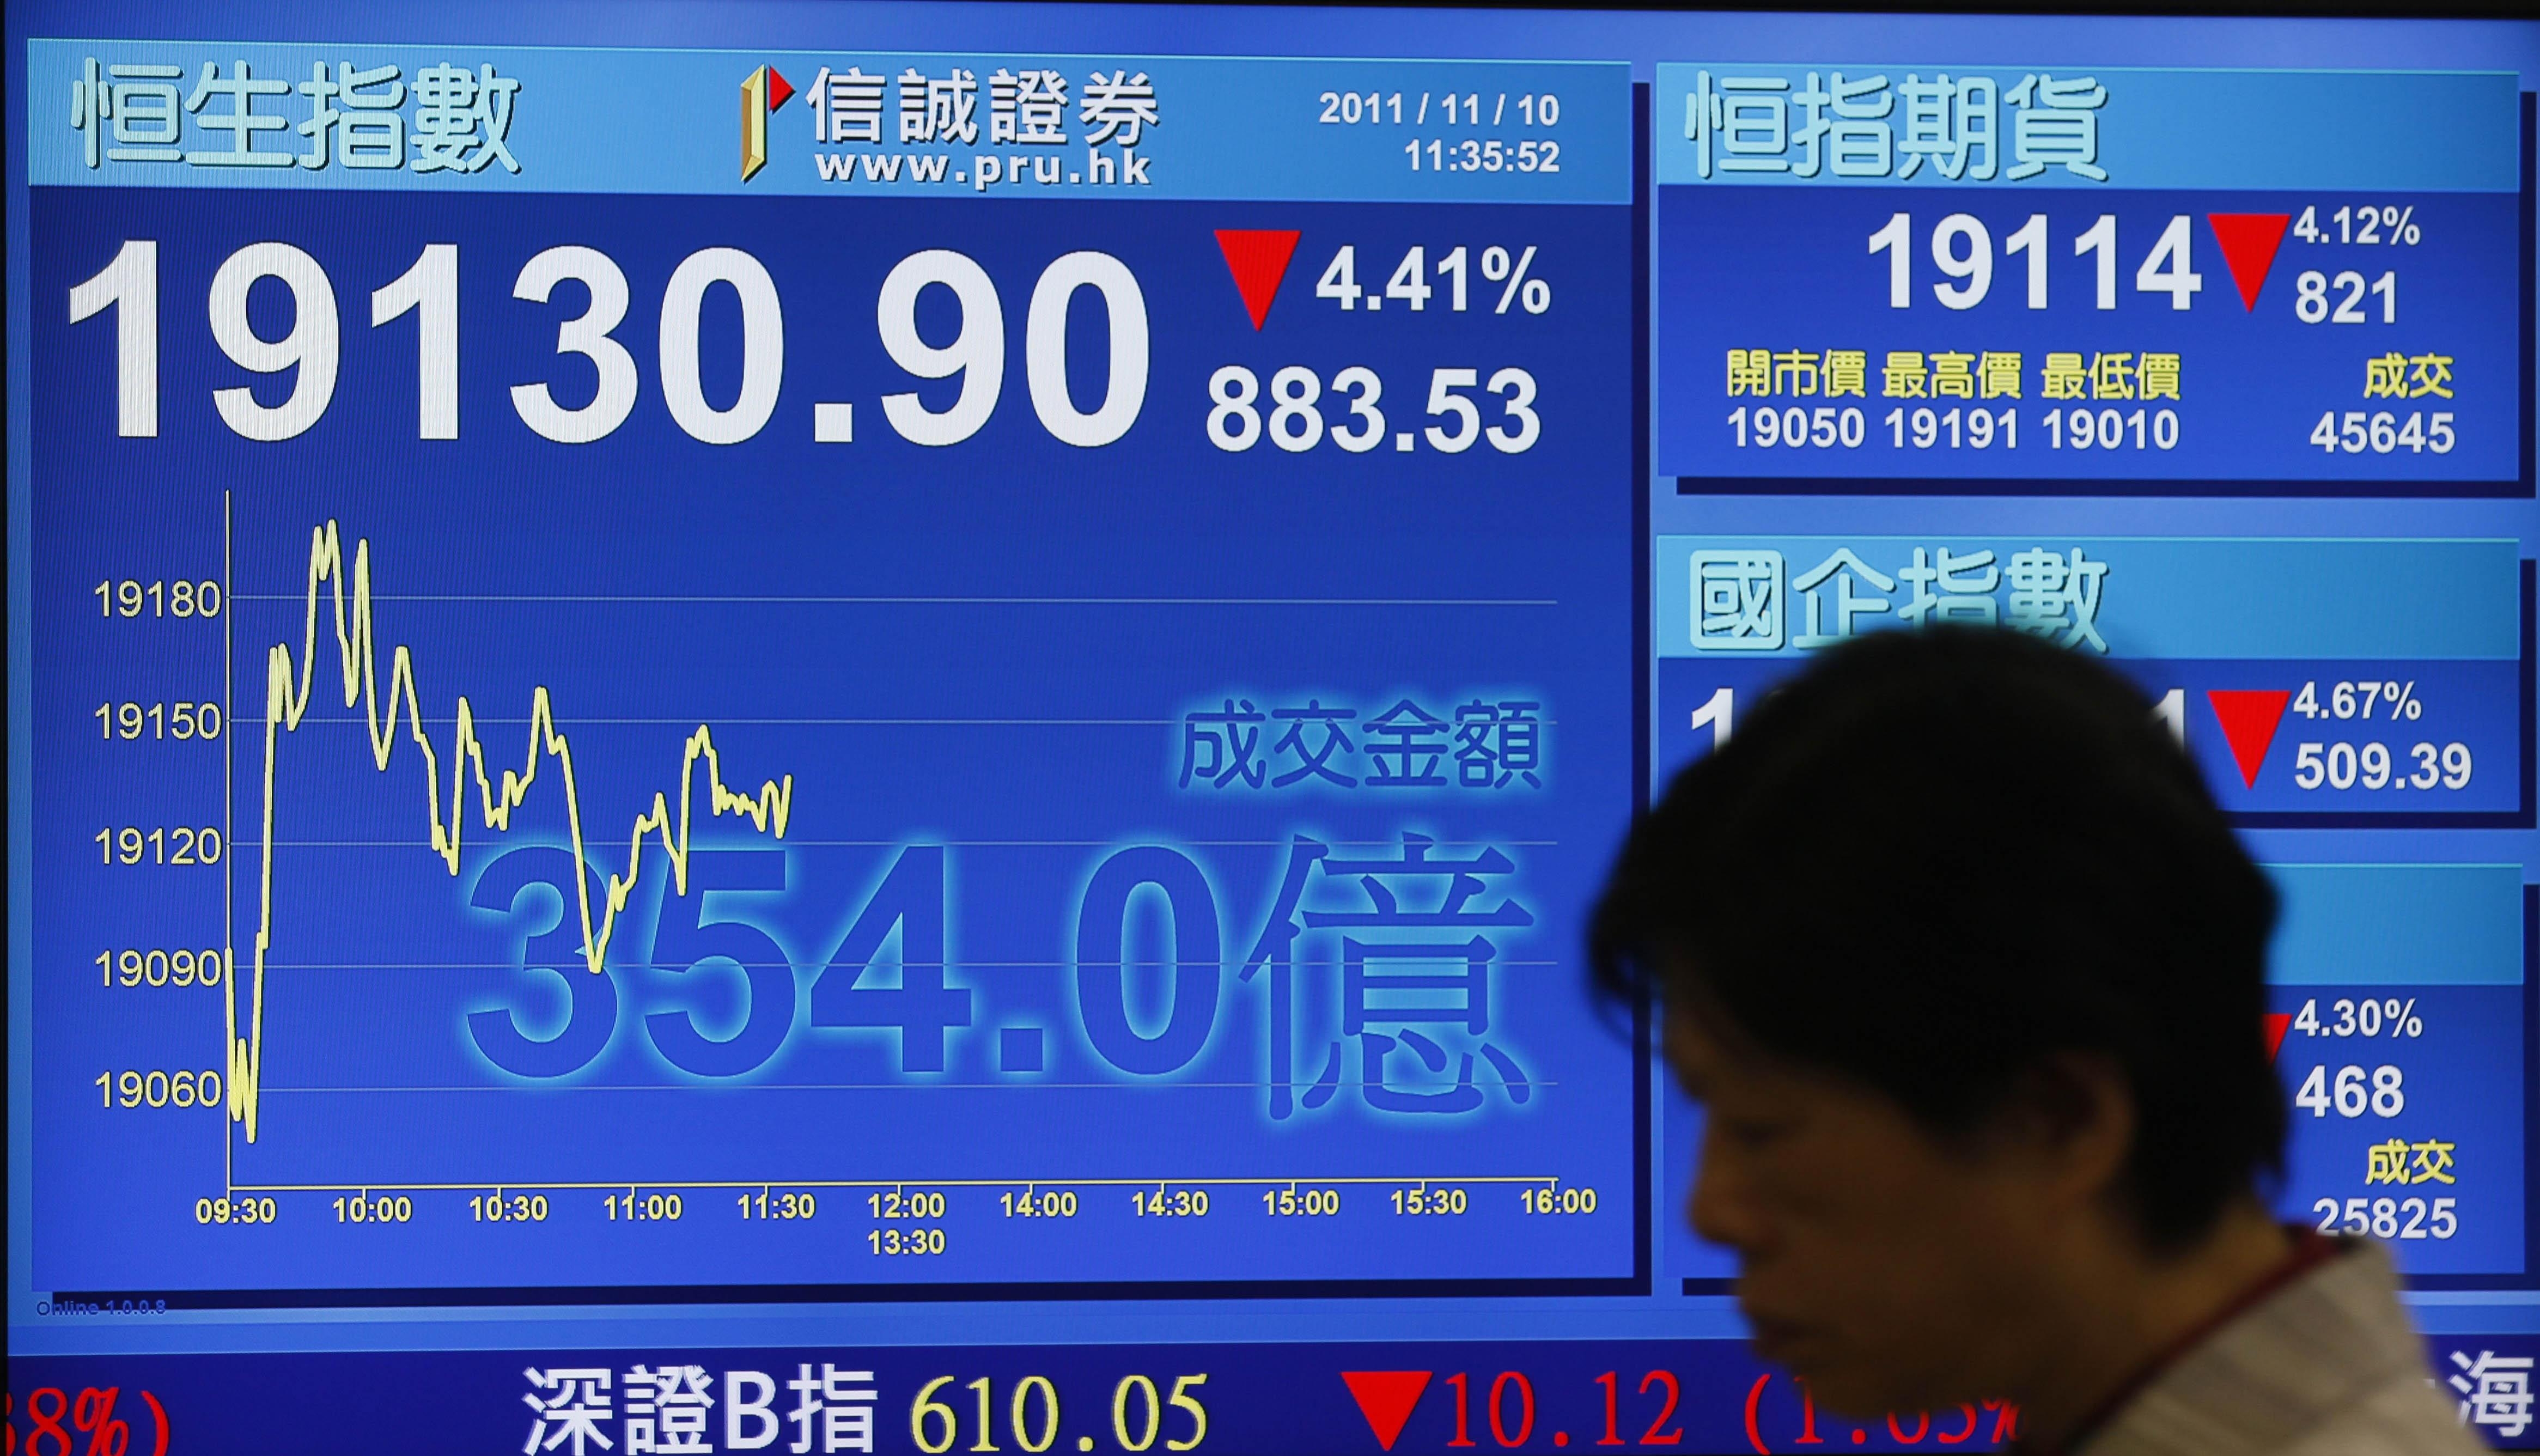 Фондовый индекс Hang Seng выводится напрямую на табло